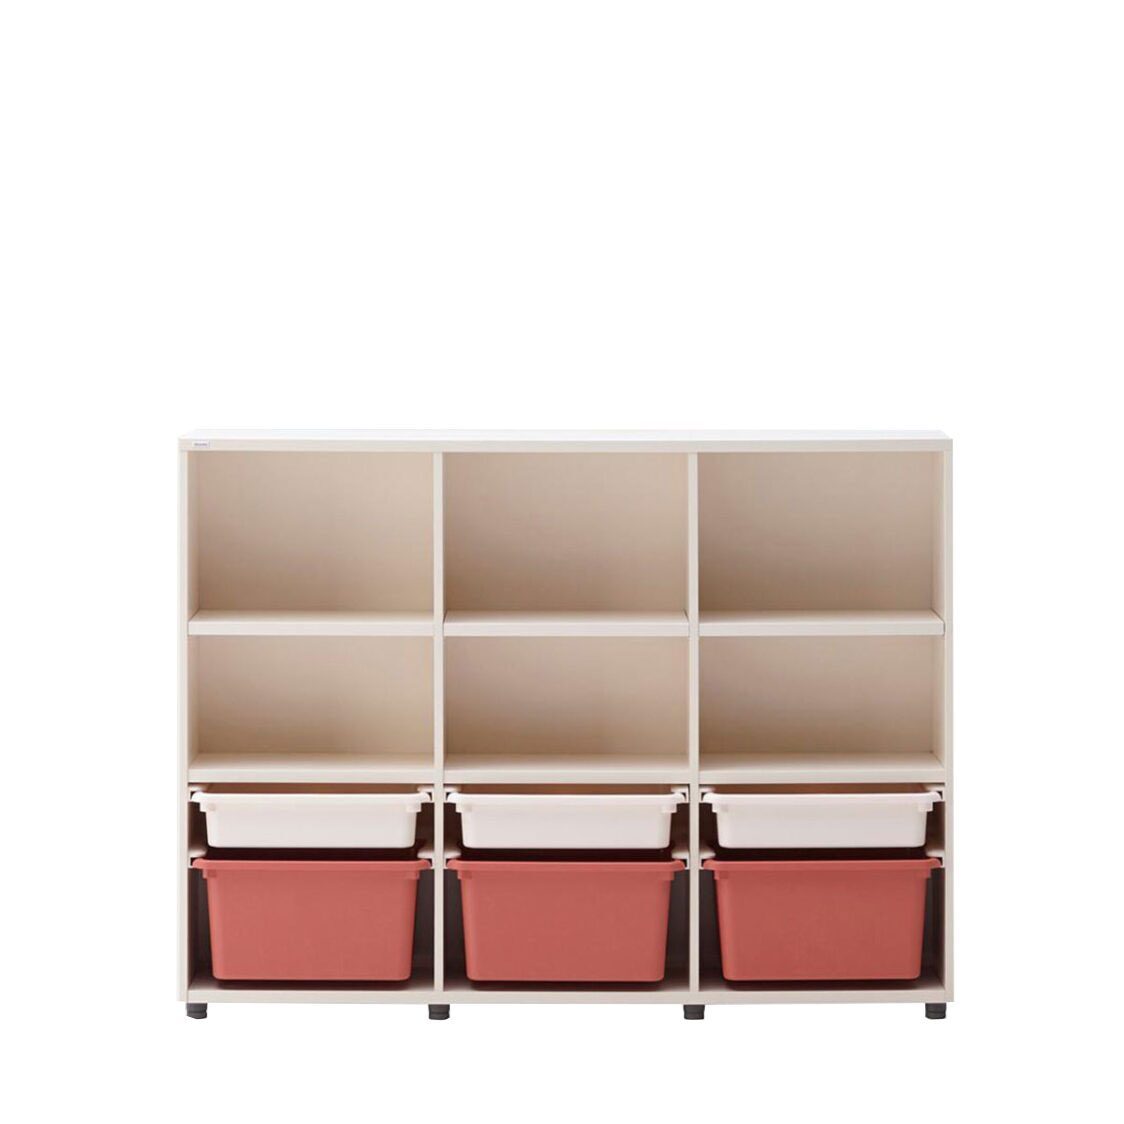 Iloom 3-Story Bookshelf with PL Box Storage 1400W Red